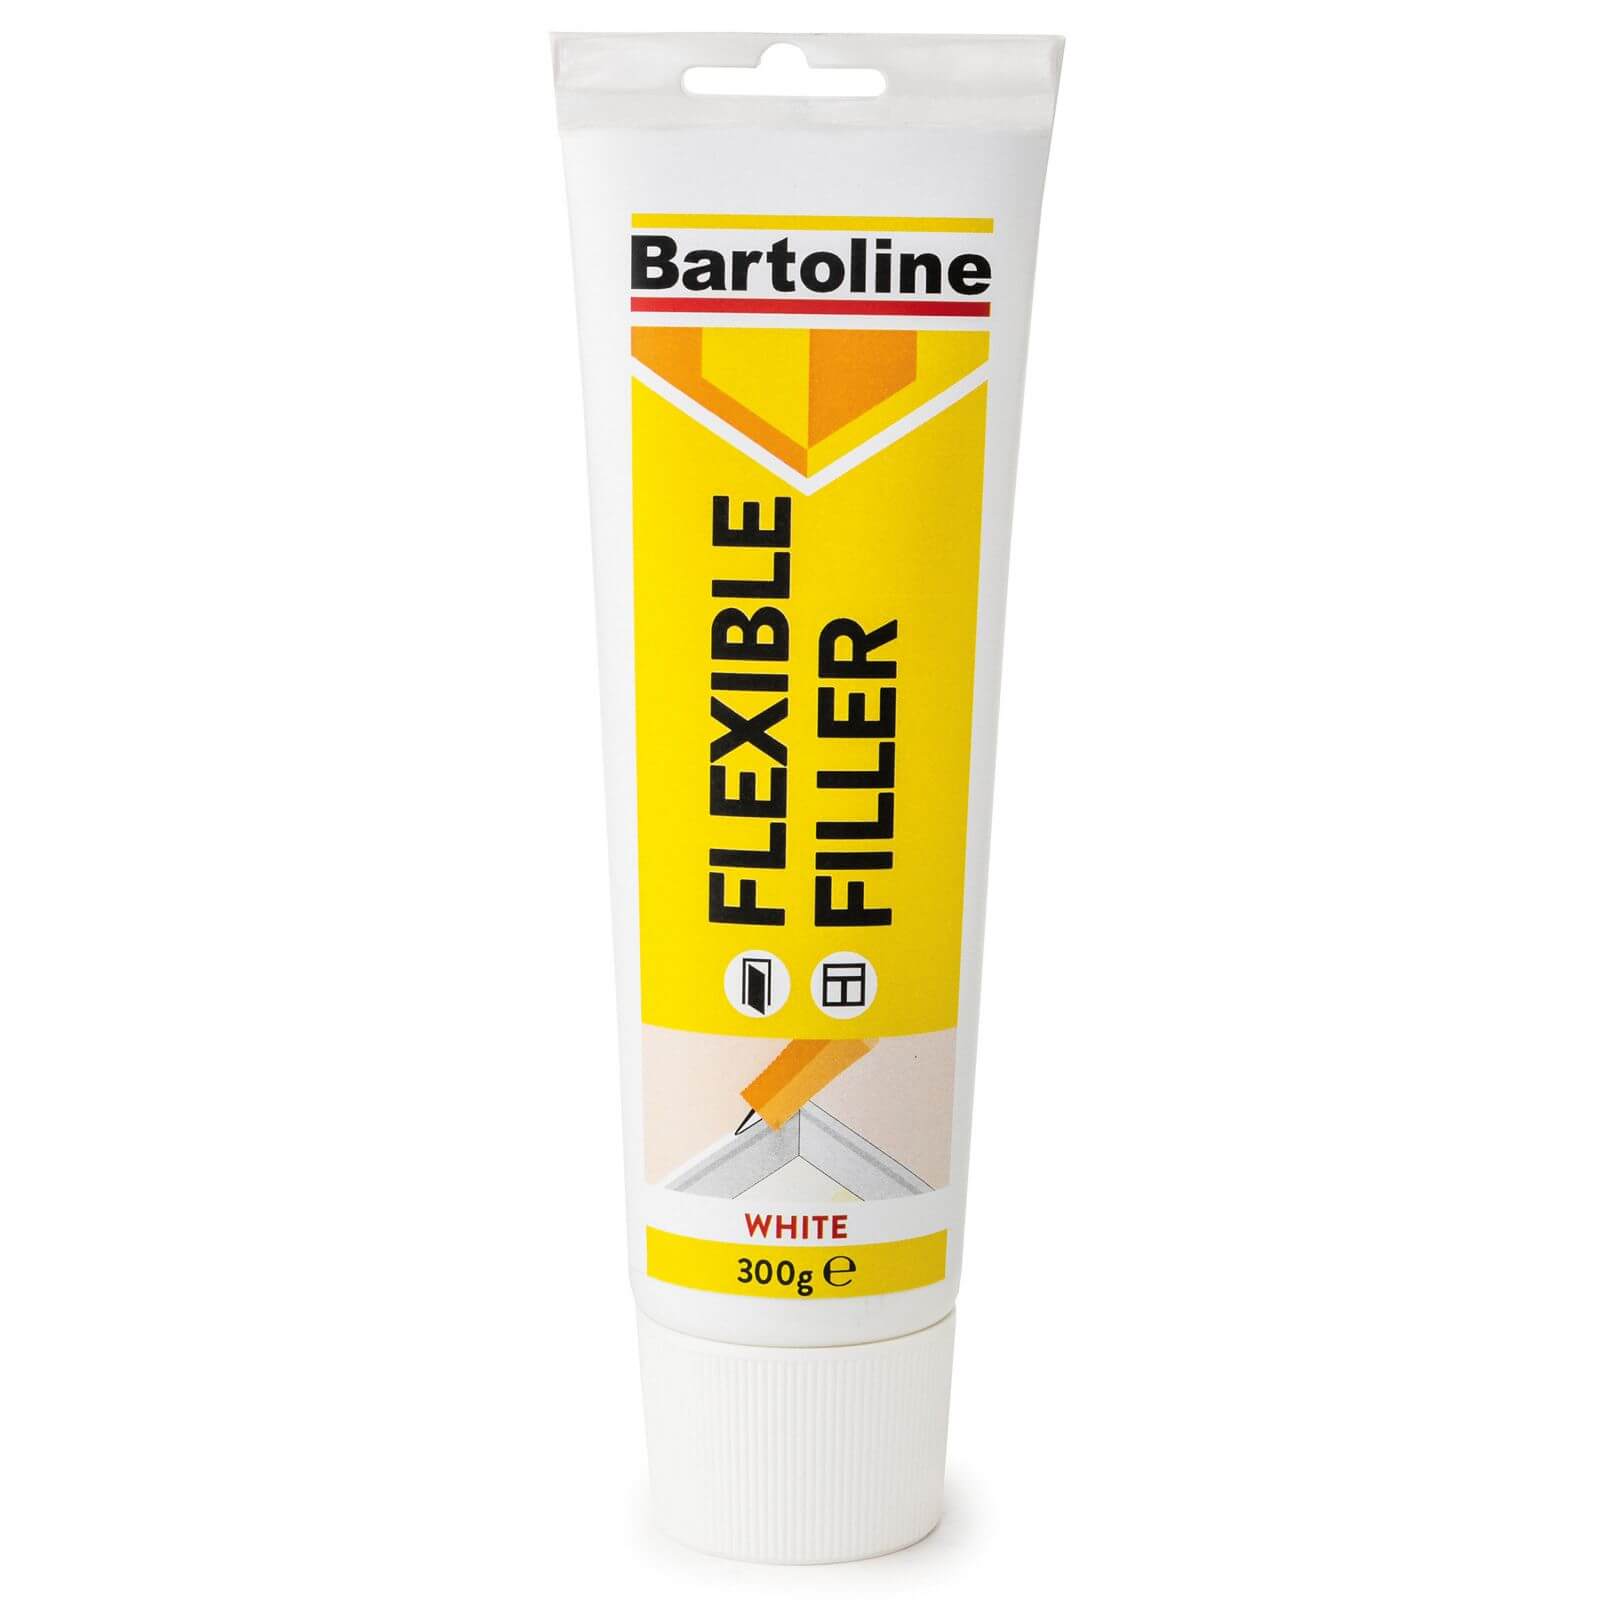 Bartoline Flexible Filler - 300g